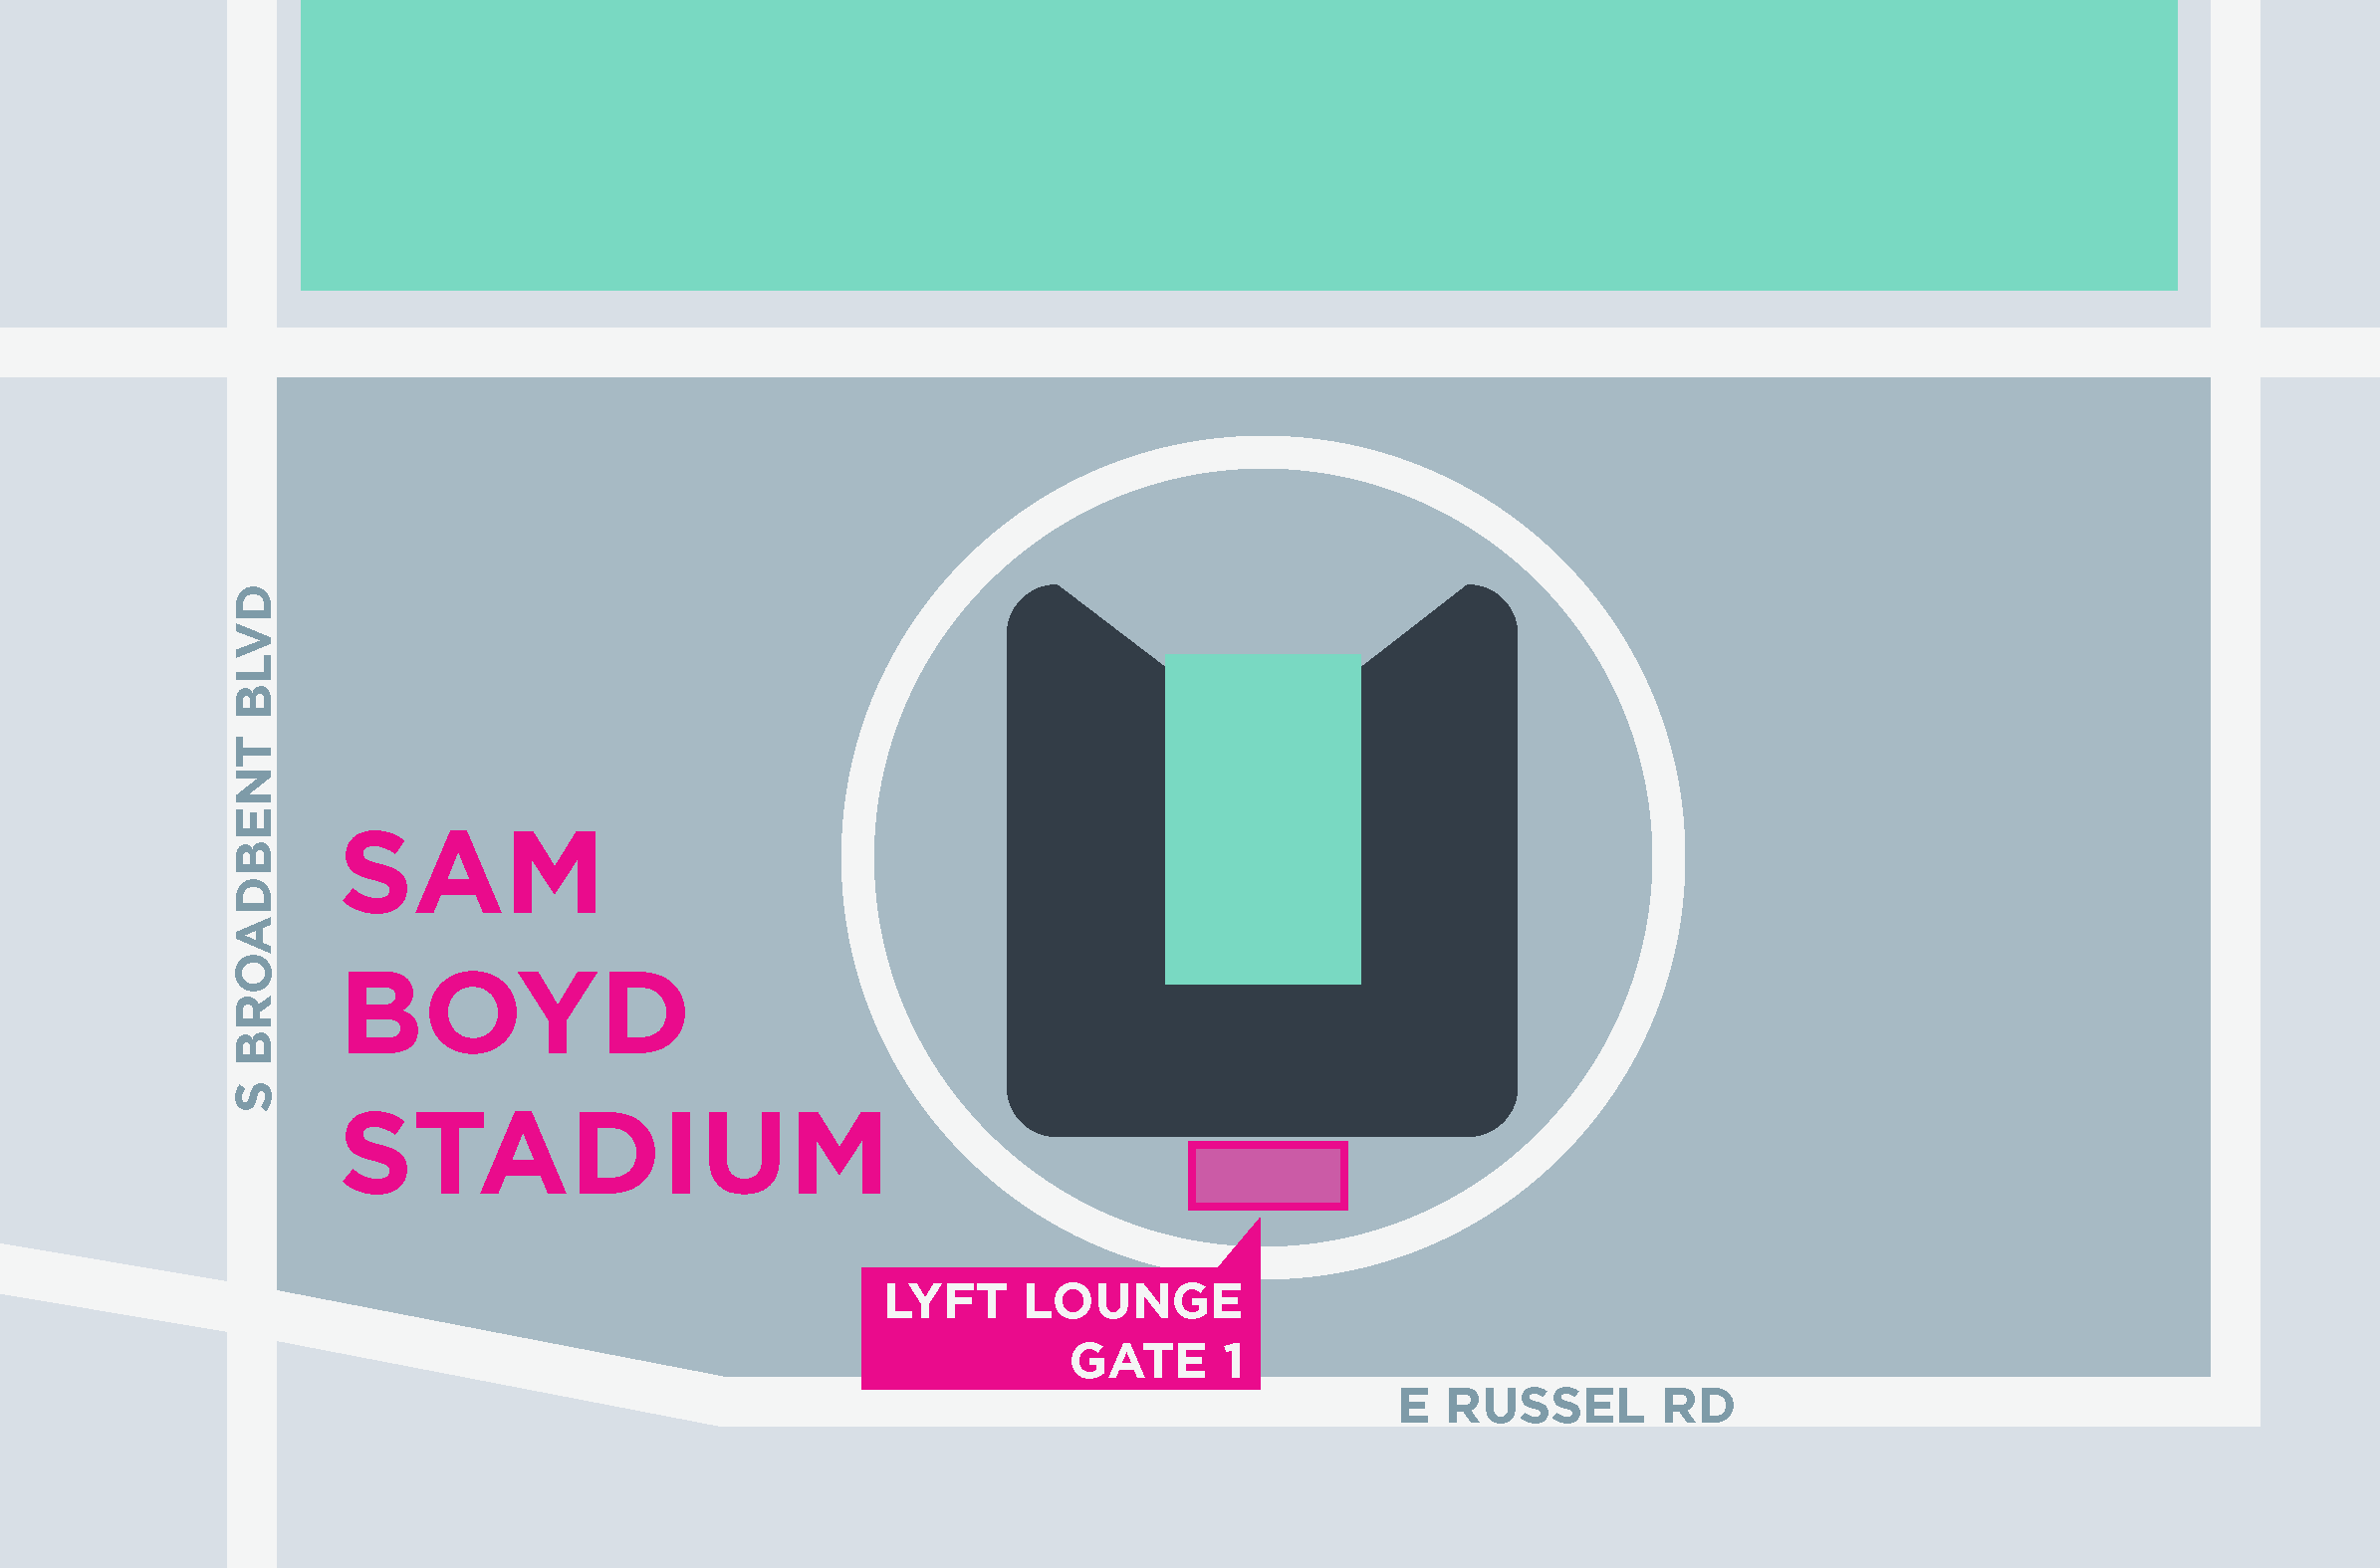 Esta imagem mostra um mapa do Sam Boyd Stadium, incluindo pontos de encontro e áreas de desembarque.